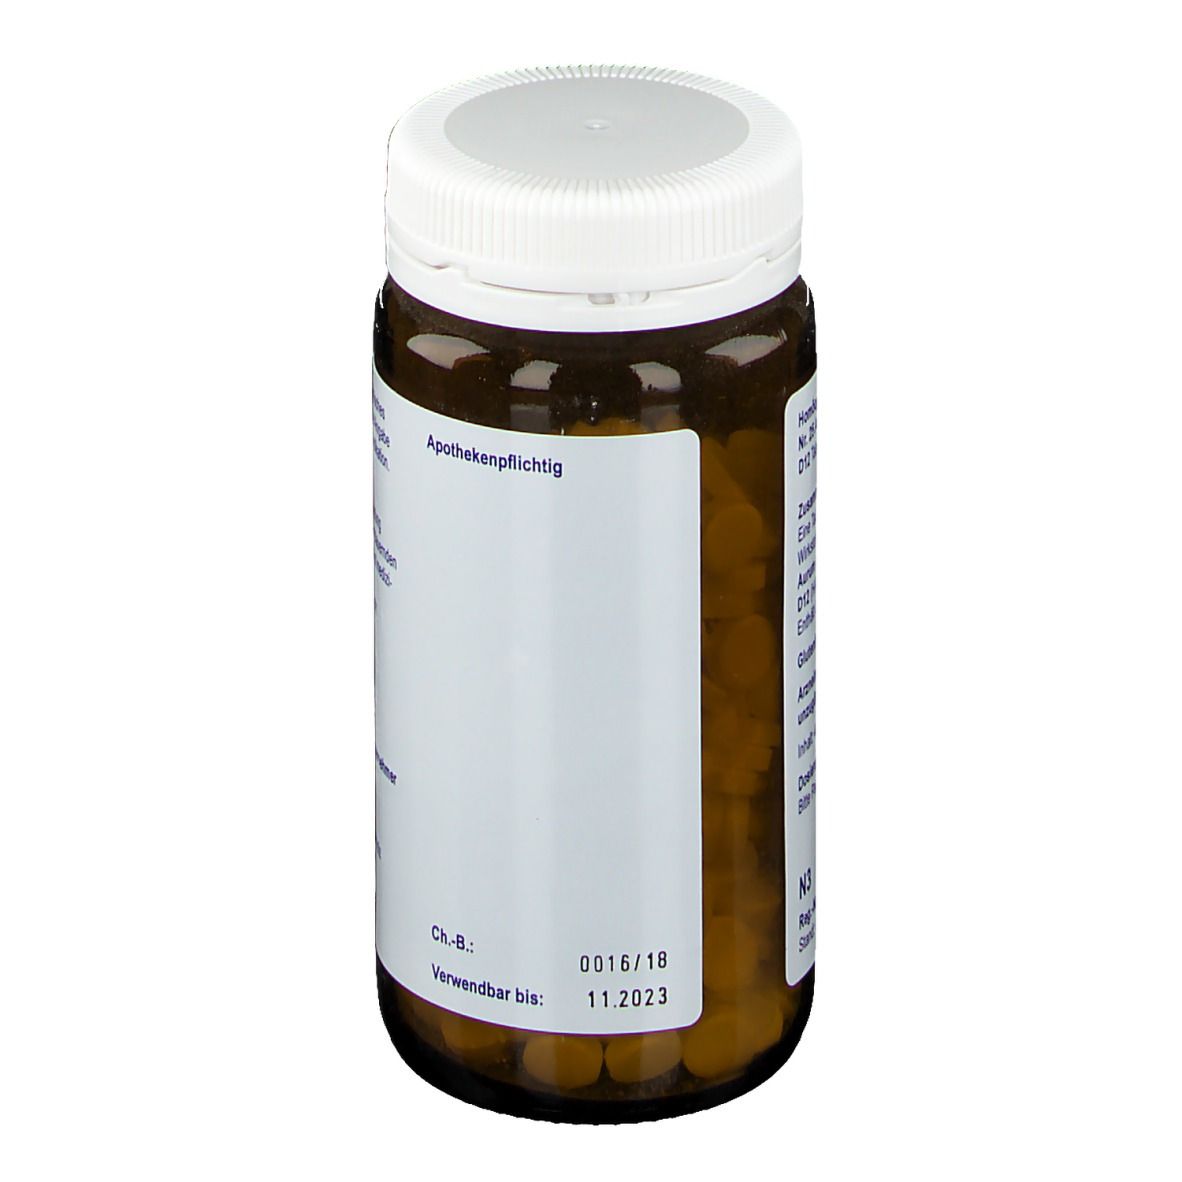 Biochemie orthim® Nr. 25 Aurum chloratum natronatum D12